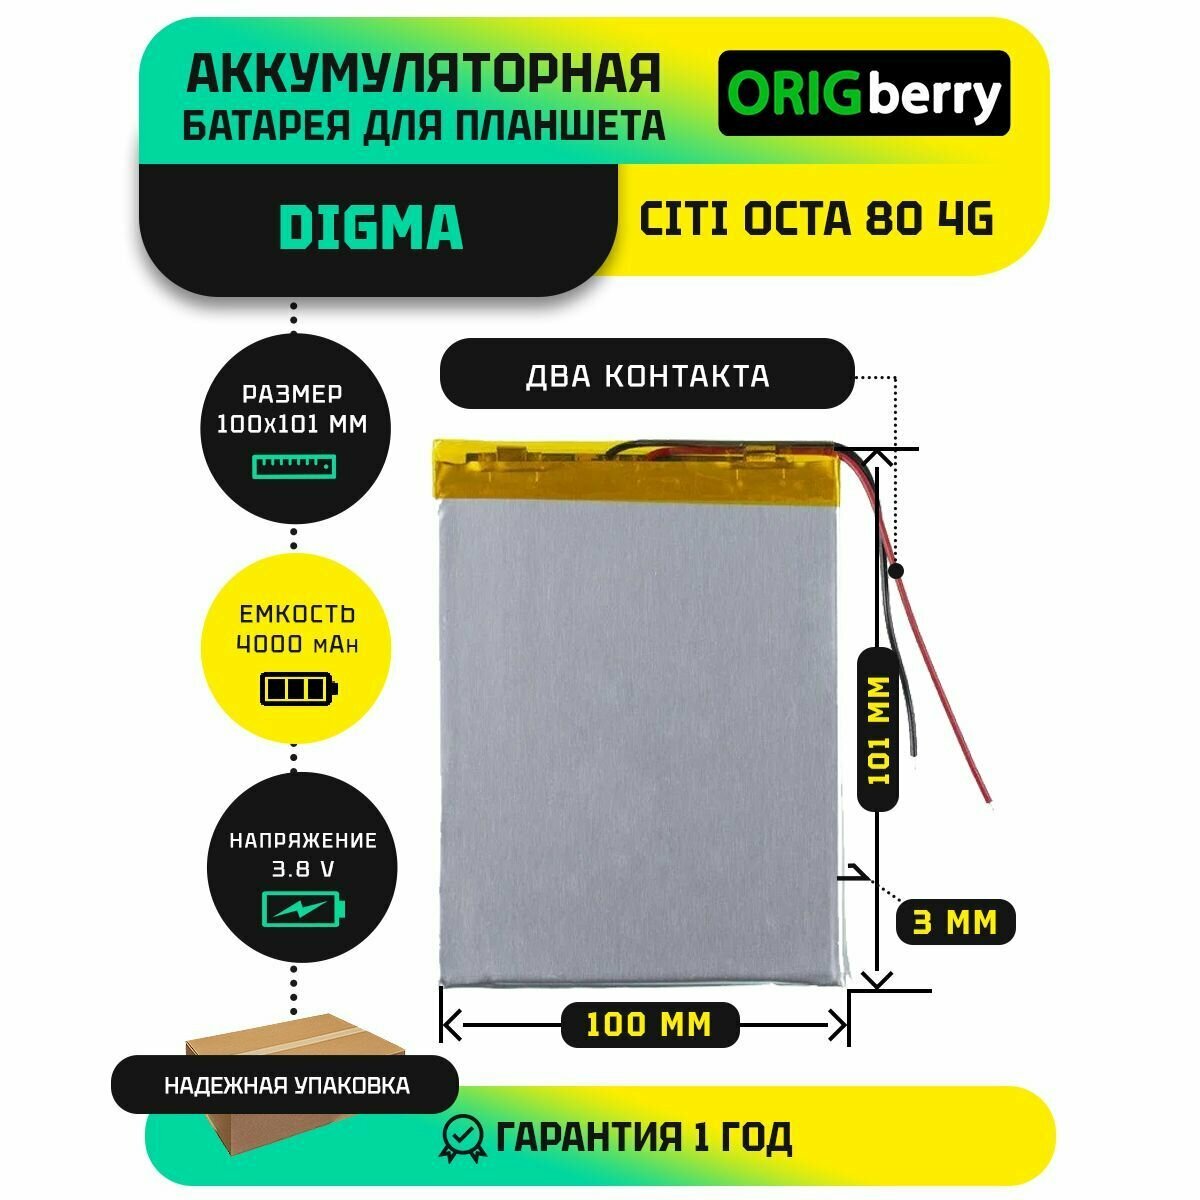 Аккумулятор для планшета Digma CITI Octa 80 4G